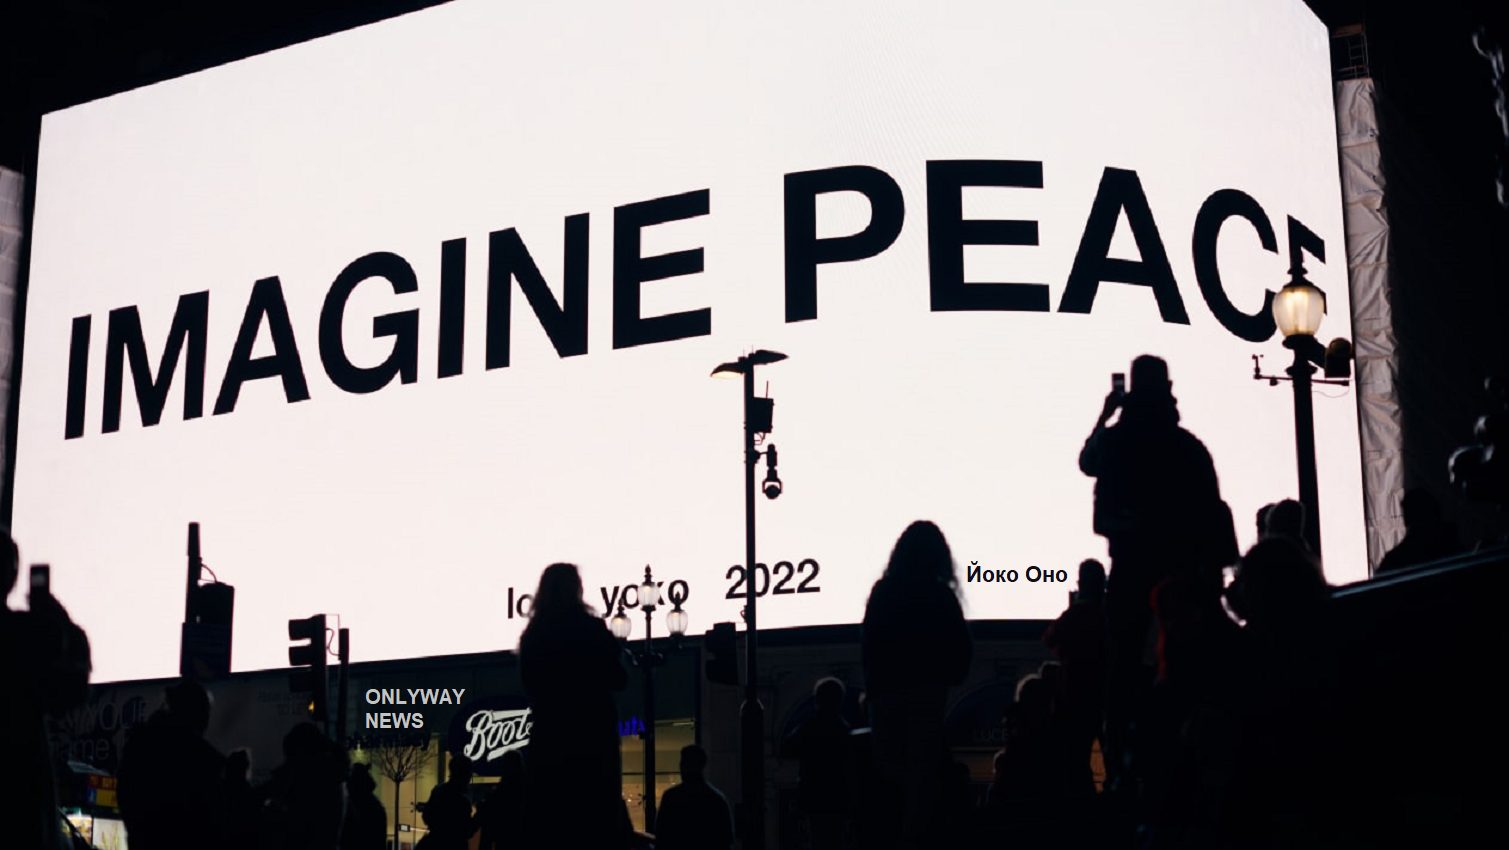 Трансляция на Piccadilly Lights в Лондоне будет прервана в 8:22 вечера по местному времени, чтобы транслировать фразу «Imagine Peace» жирным черным текстом каждую ночь до конца марта.